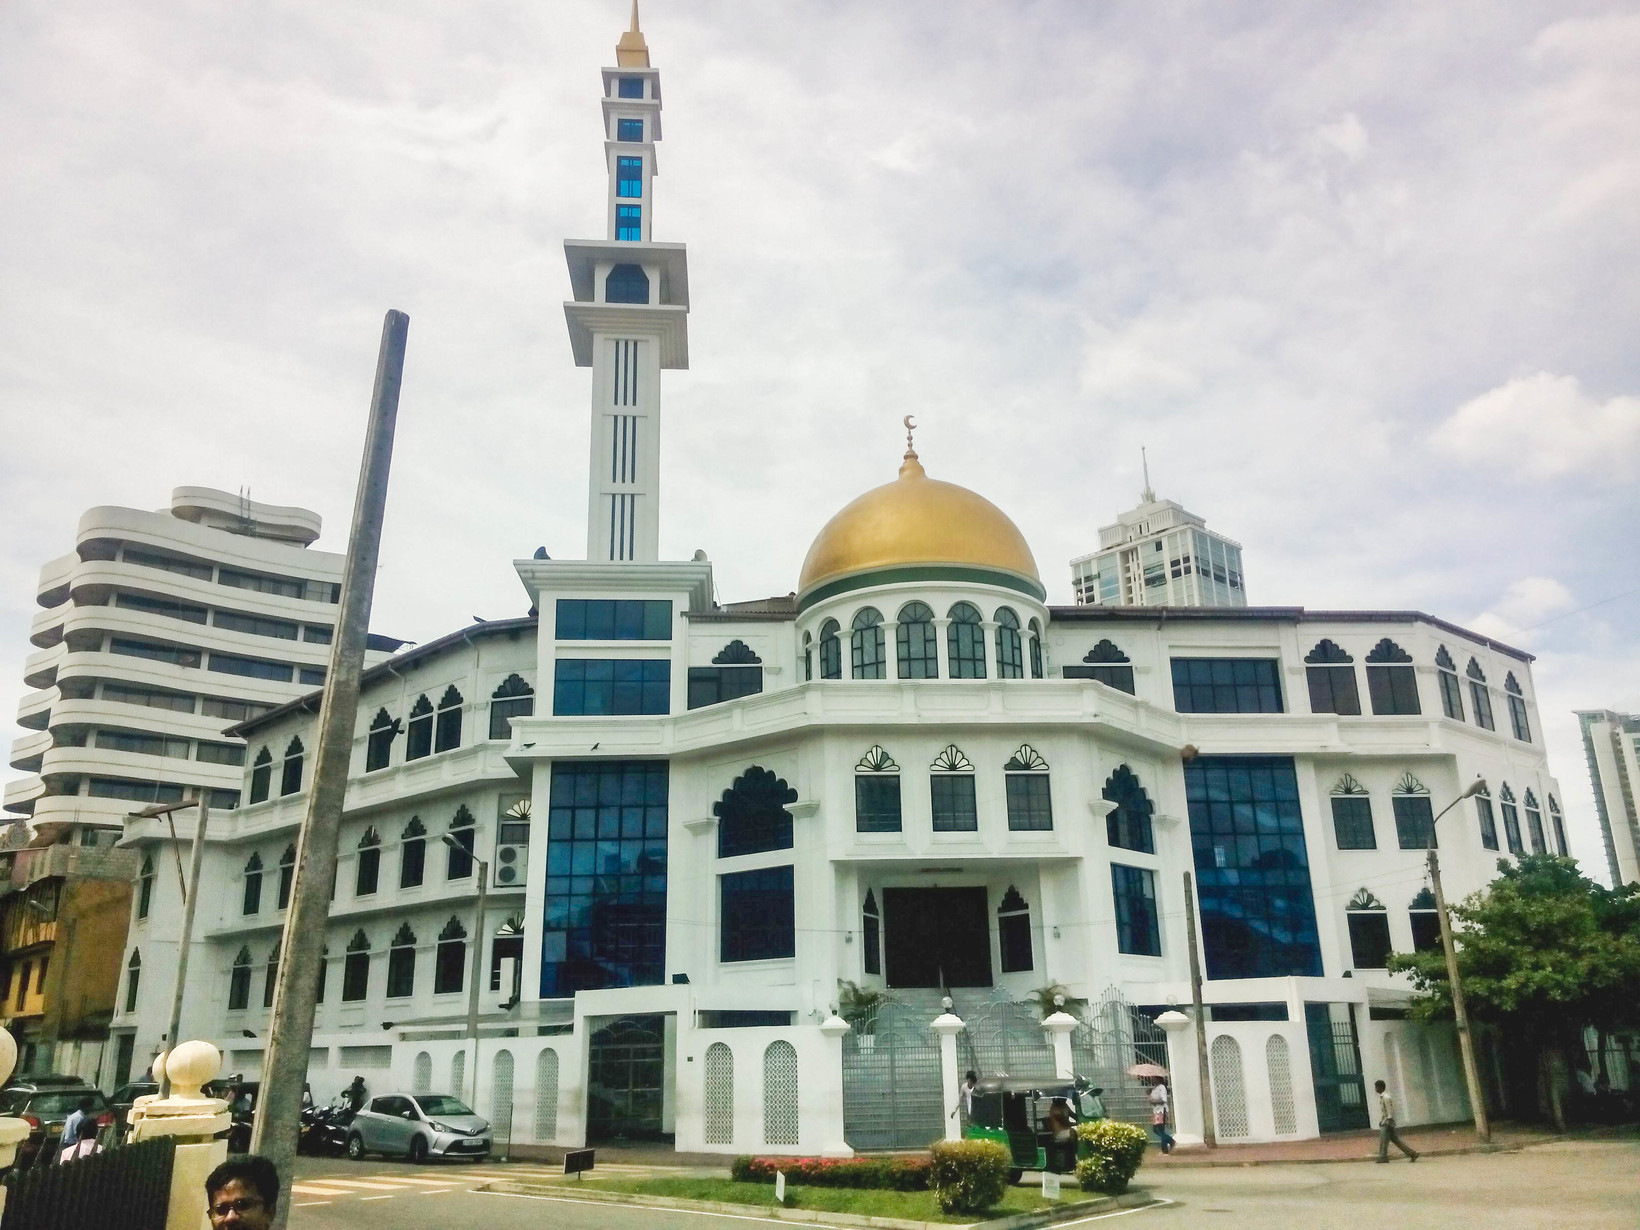 مکانهای مذهبی و برتر شهر کلمبو